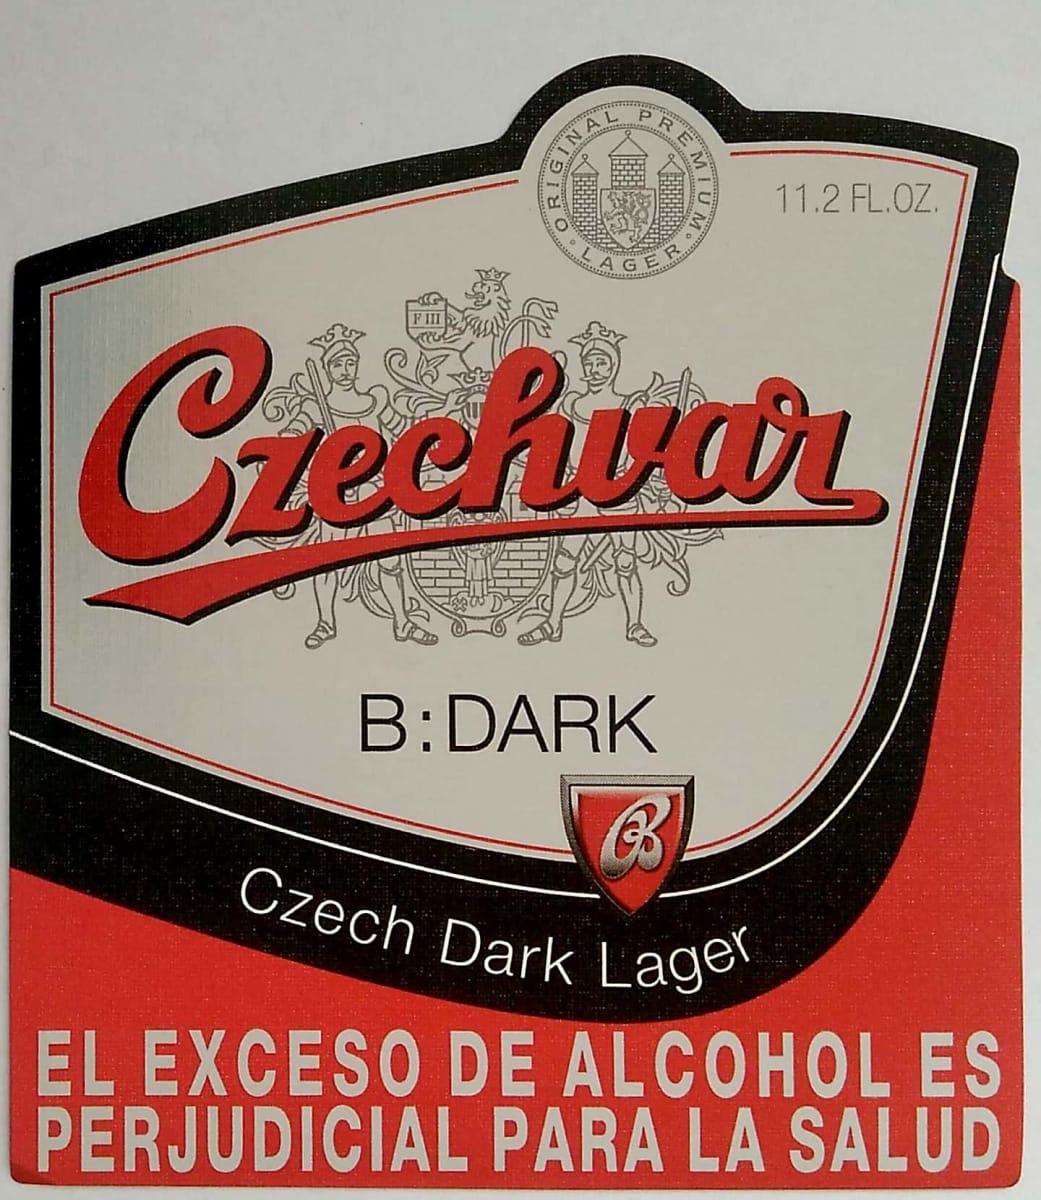 Budweiser Budvar B DARK Czech Dark Lager 11.2fl.oz. El exceso Etk. A